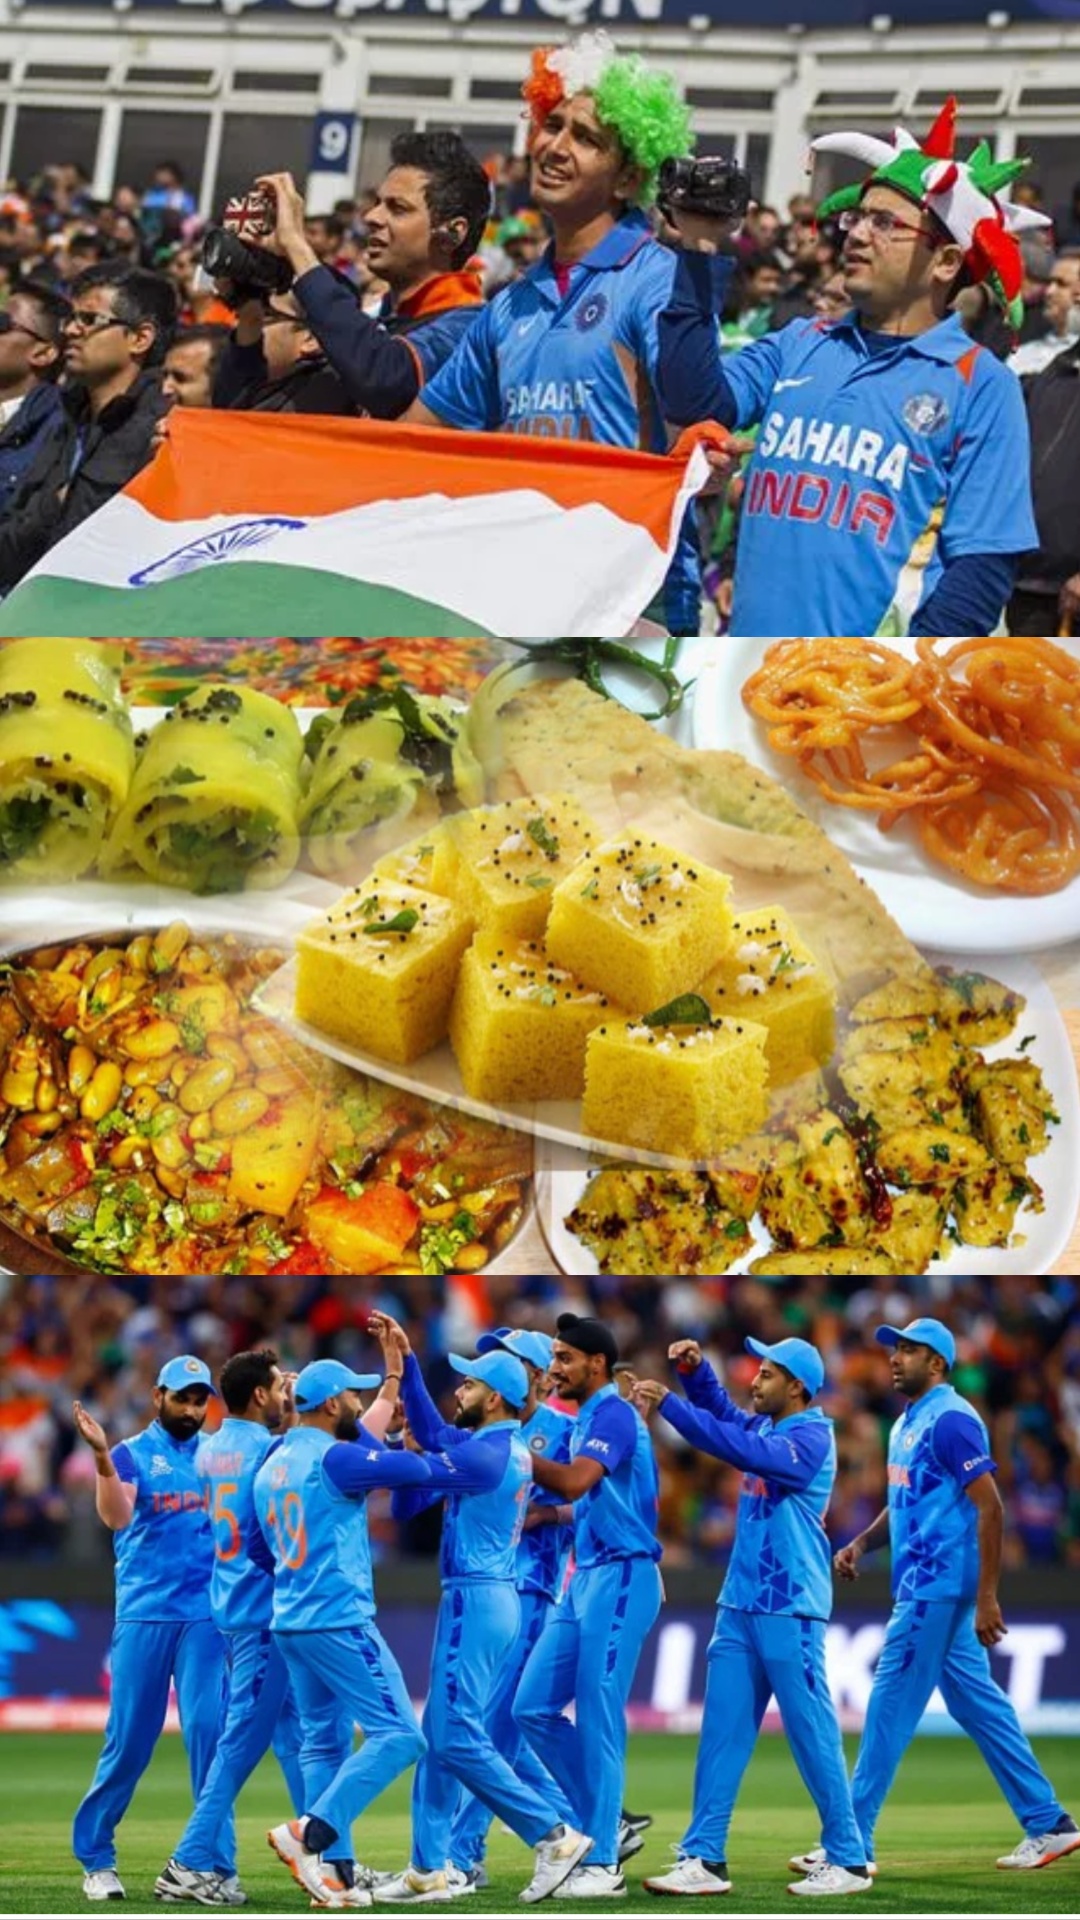 India vs Australia WC: इंडिया ऑस्ट्रेलिया का मैच देखने गए हैं अहमदाबाद, ज़रूर चखें ये गुजराती डिश